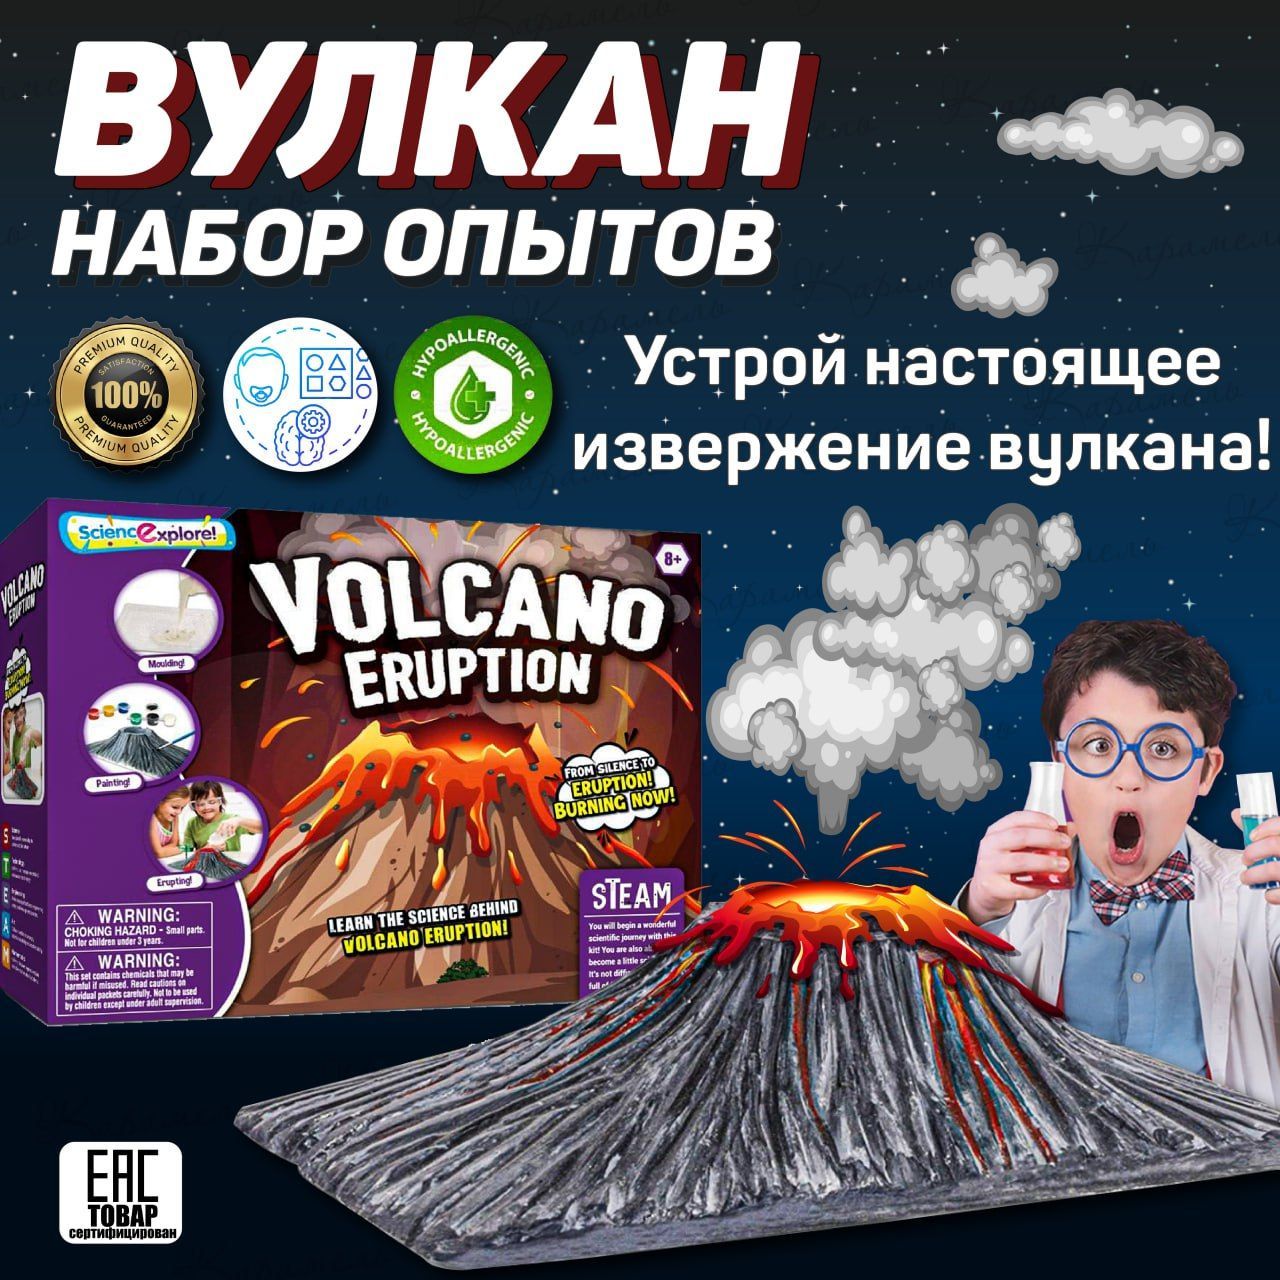 Опыт для детей Вулкан. 3 способа сделать вулкан дома